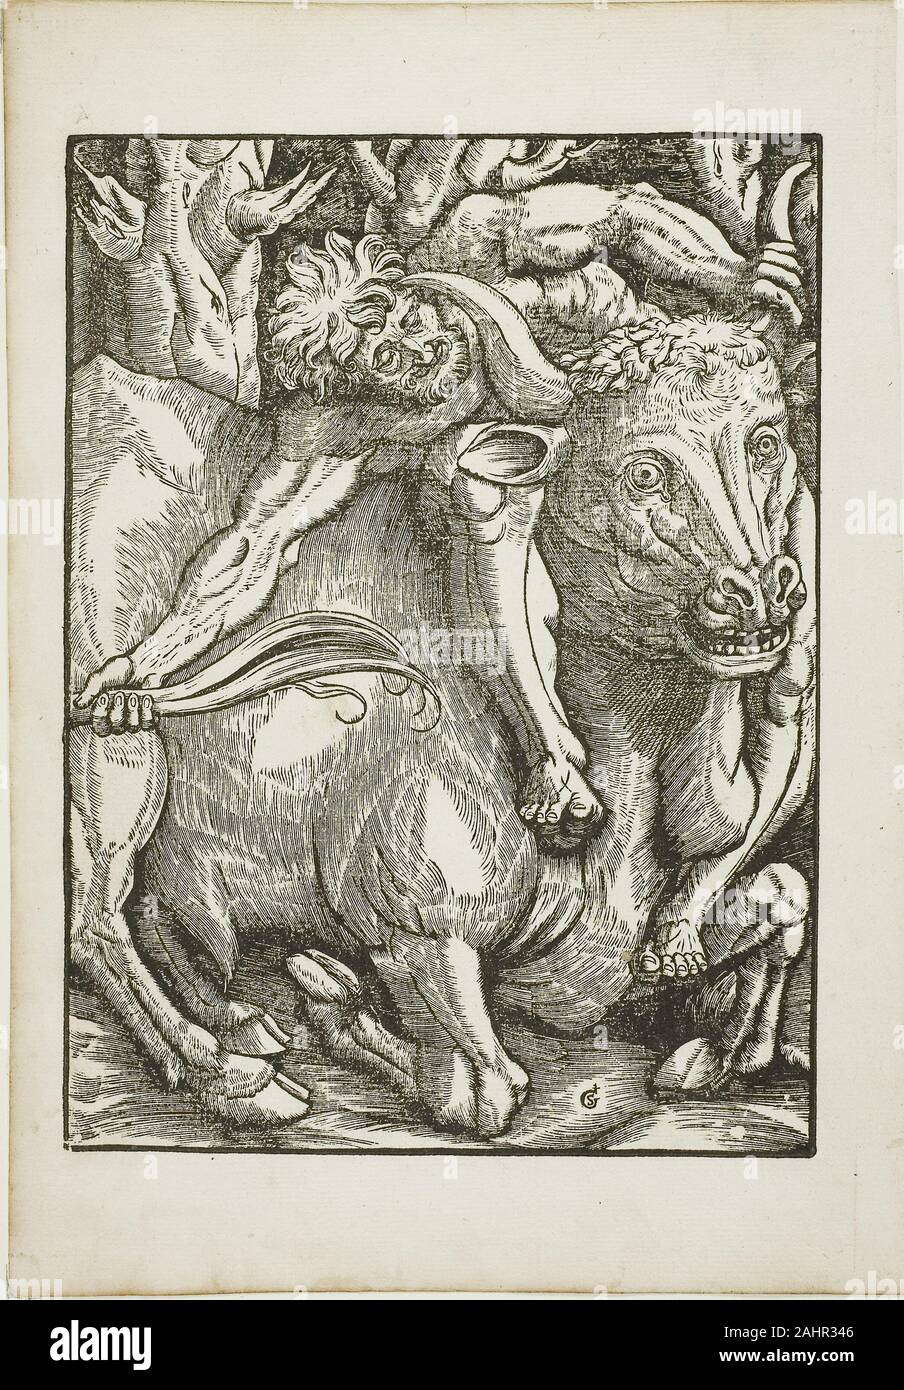 Gabriel le saumon. Les travaux d'Hercule Hercule Capture de la Crète et Bull. 1523-1533. La France. Gravure sur bois sur papier Banque D'Images